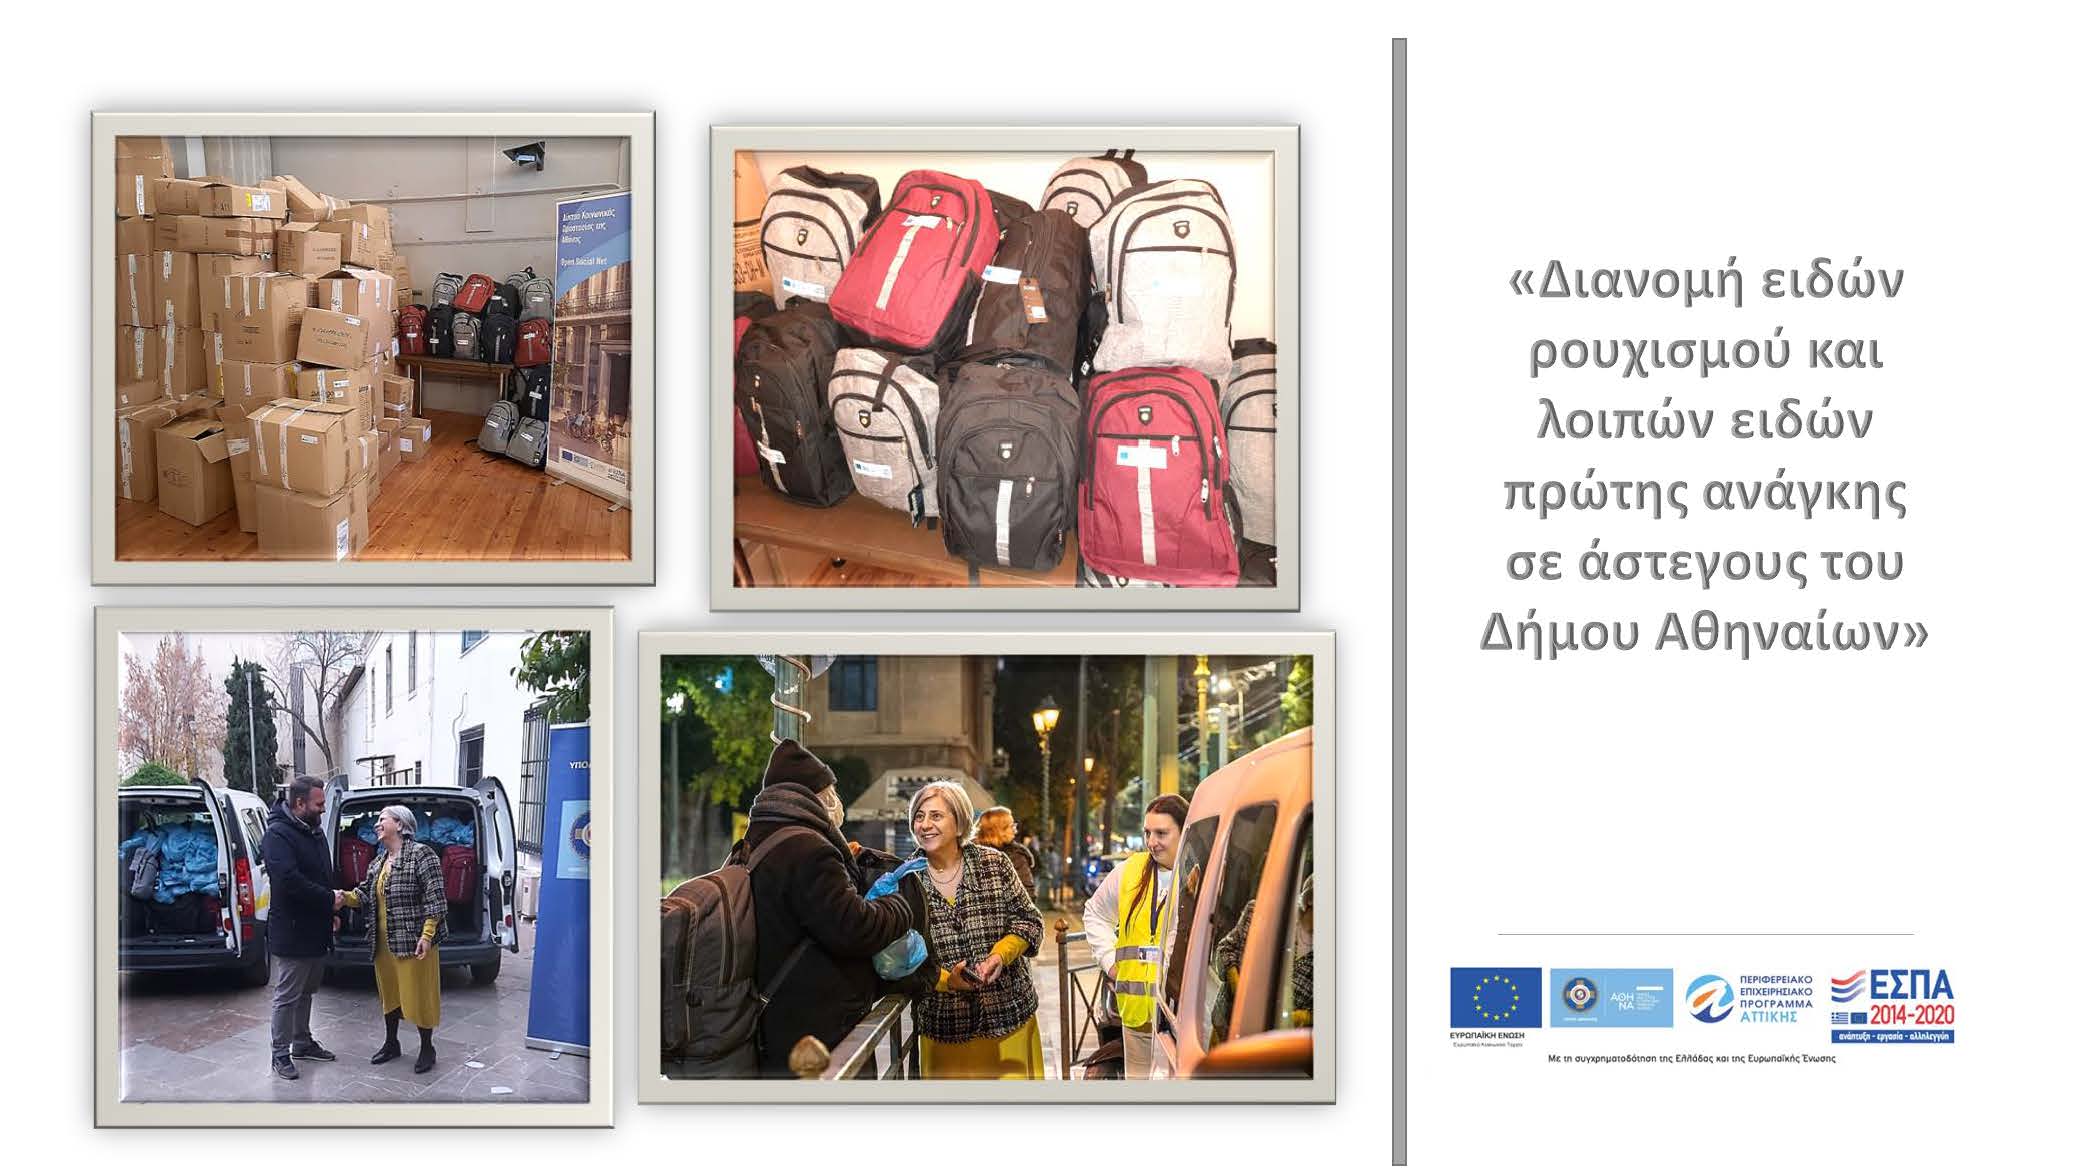 Διανομή ειδών ρουχισμού και λοιπών ειδών πρώτης ανάγκης σε άστεγους πολίτες του Δήμου Αθηναίων